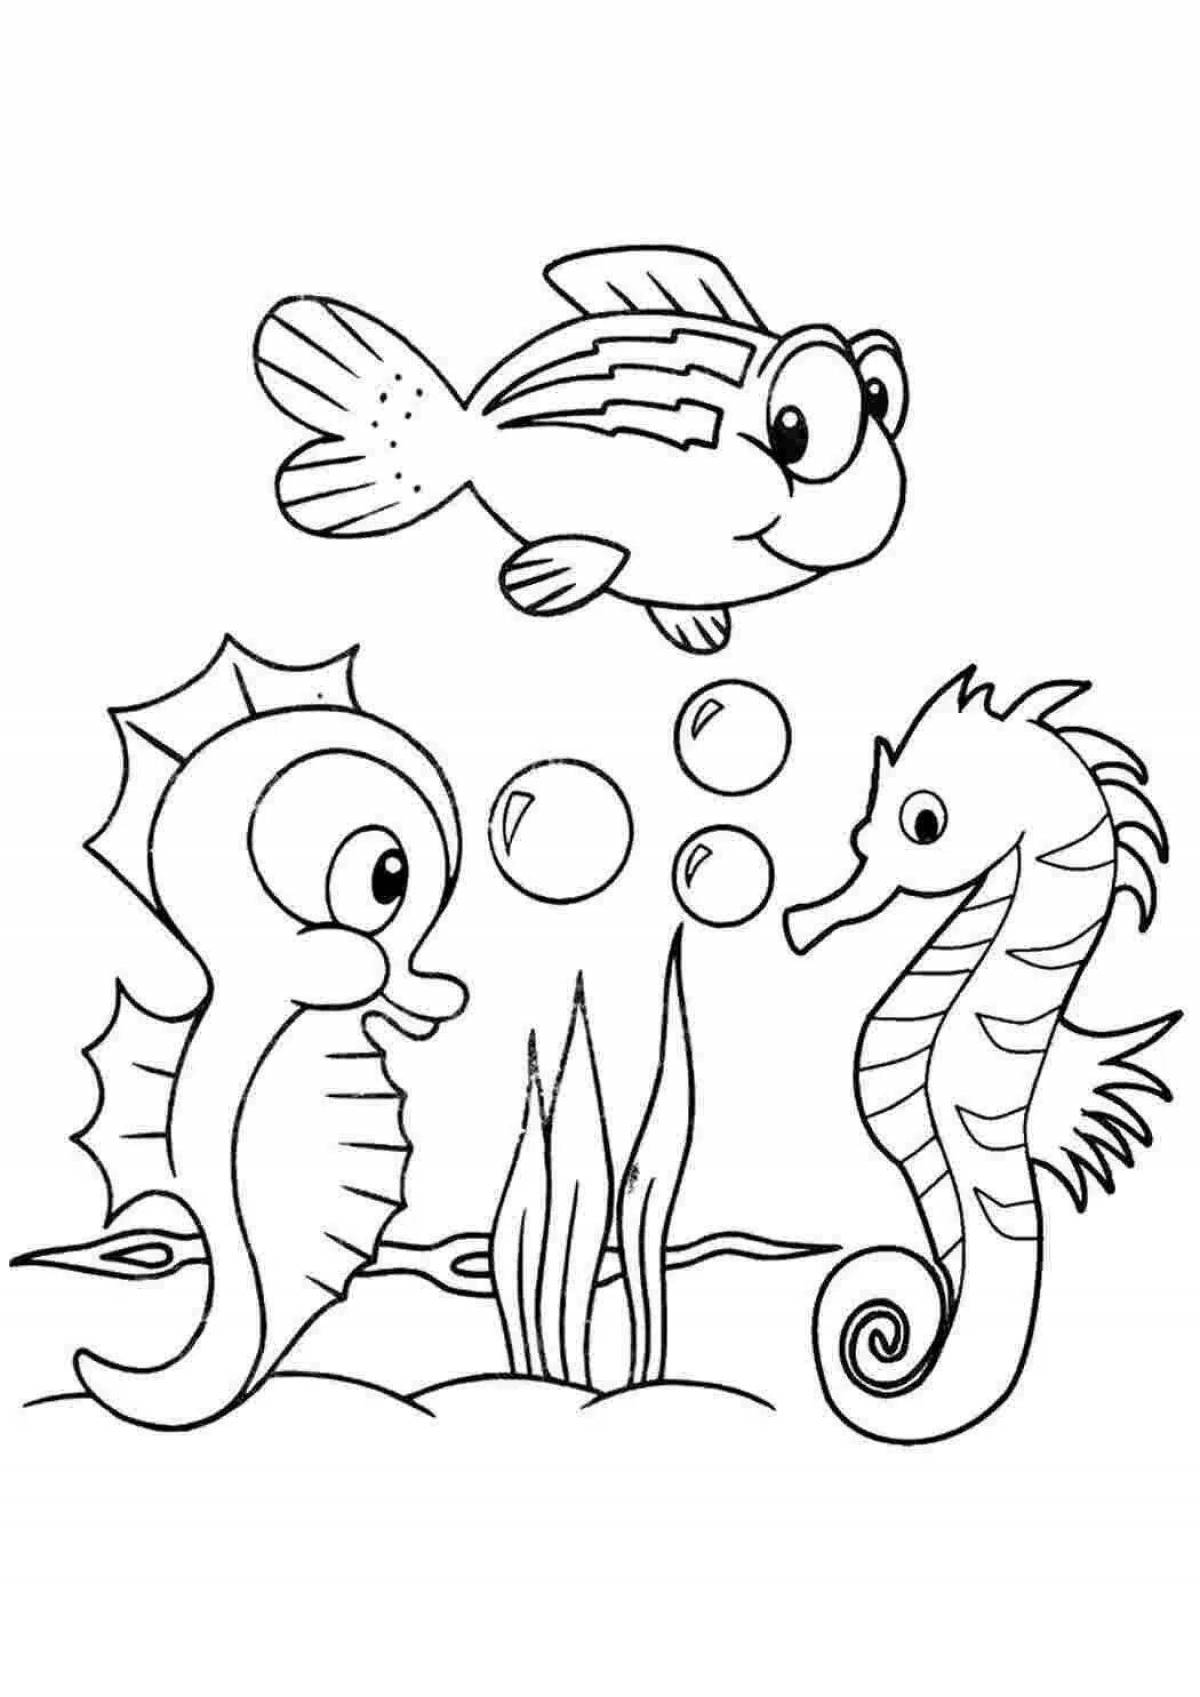 Красочная страница раскраски с морским коньком для детей